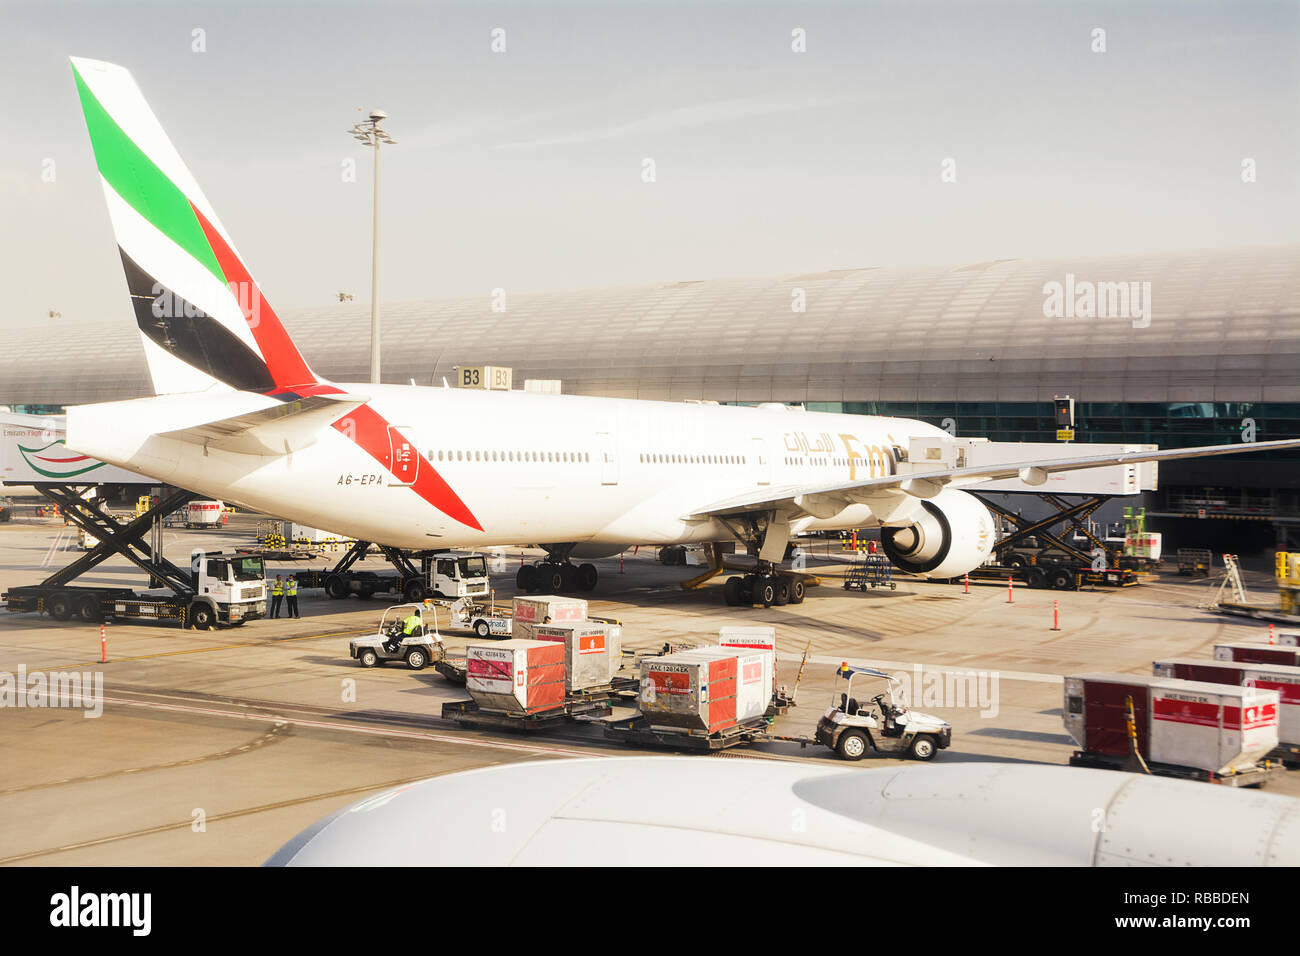 Dubai, Emiratos Árabes Unidos - Octubre 31, 2018: Avión de la compañía Emirates, estacionado en el aeropuerto internacional de Dubai dock, carga de mercancías y preparar antes de la flig Foto de stock